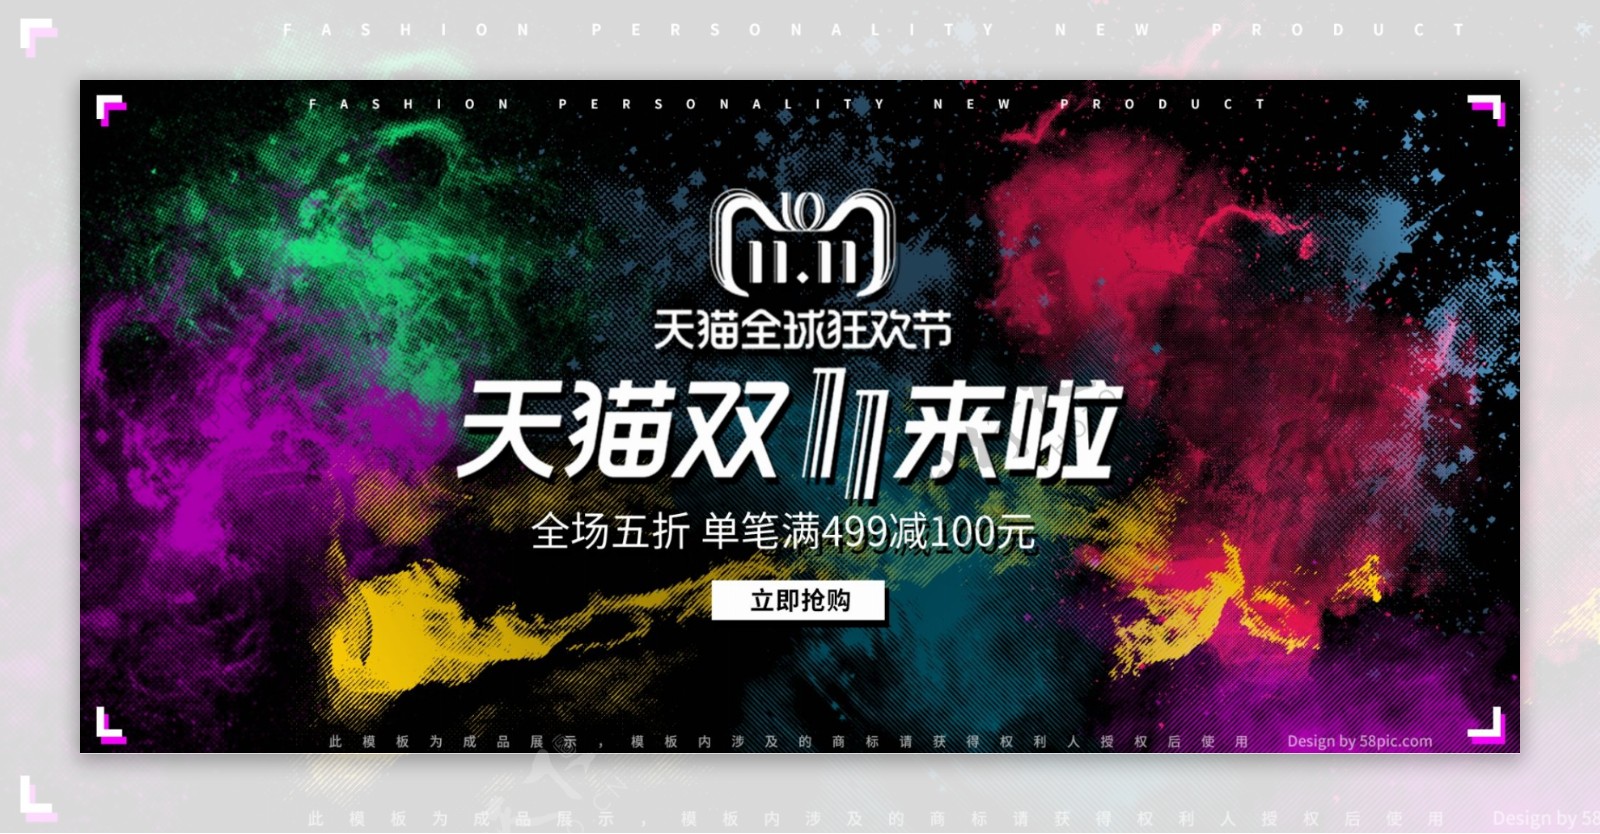 天猫双11个性炫彩电器促销banner